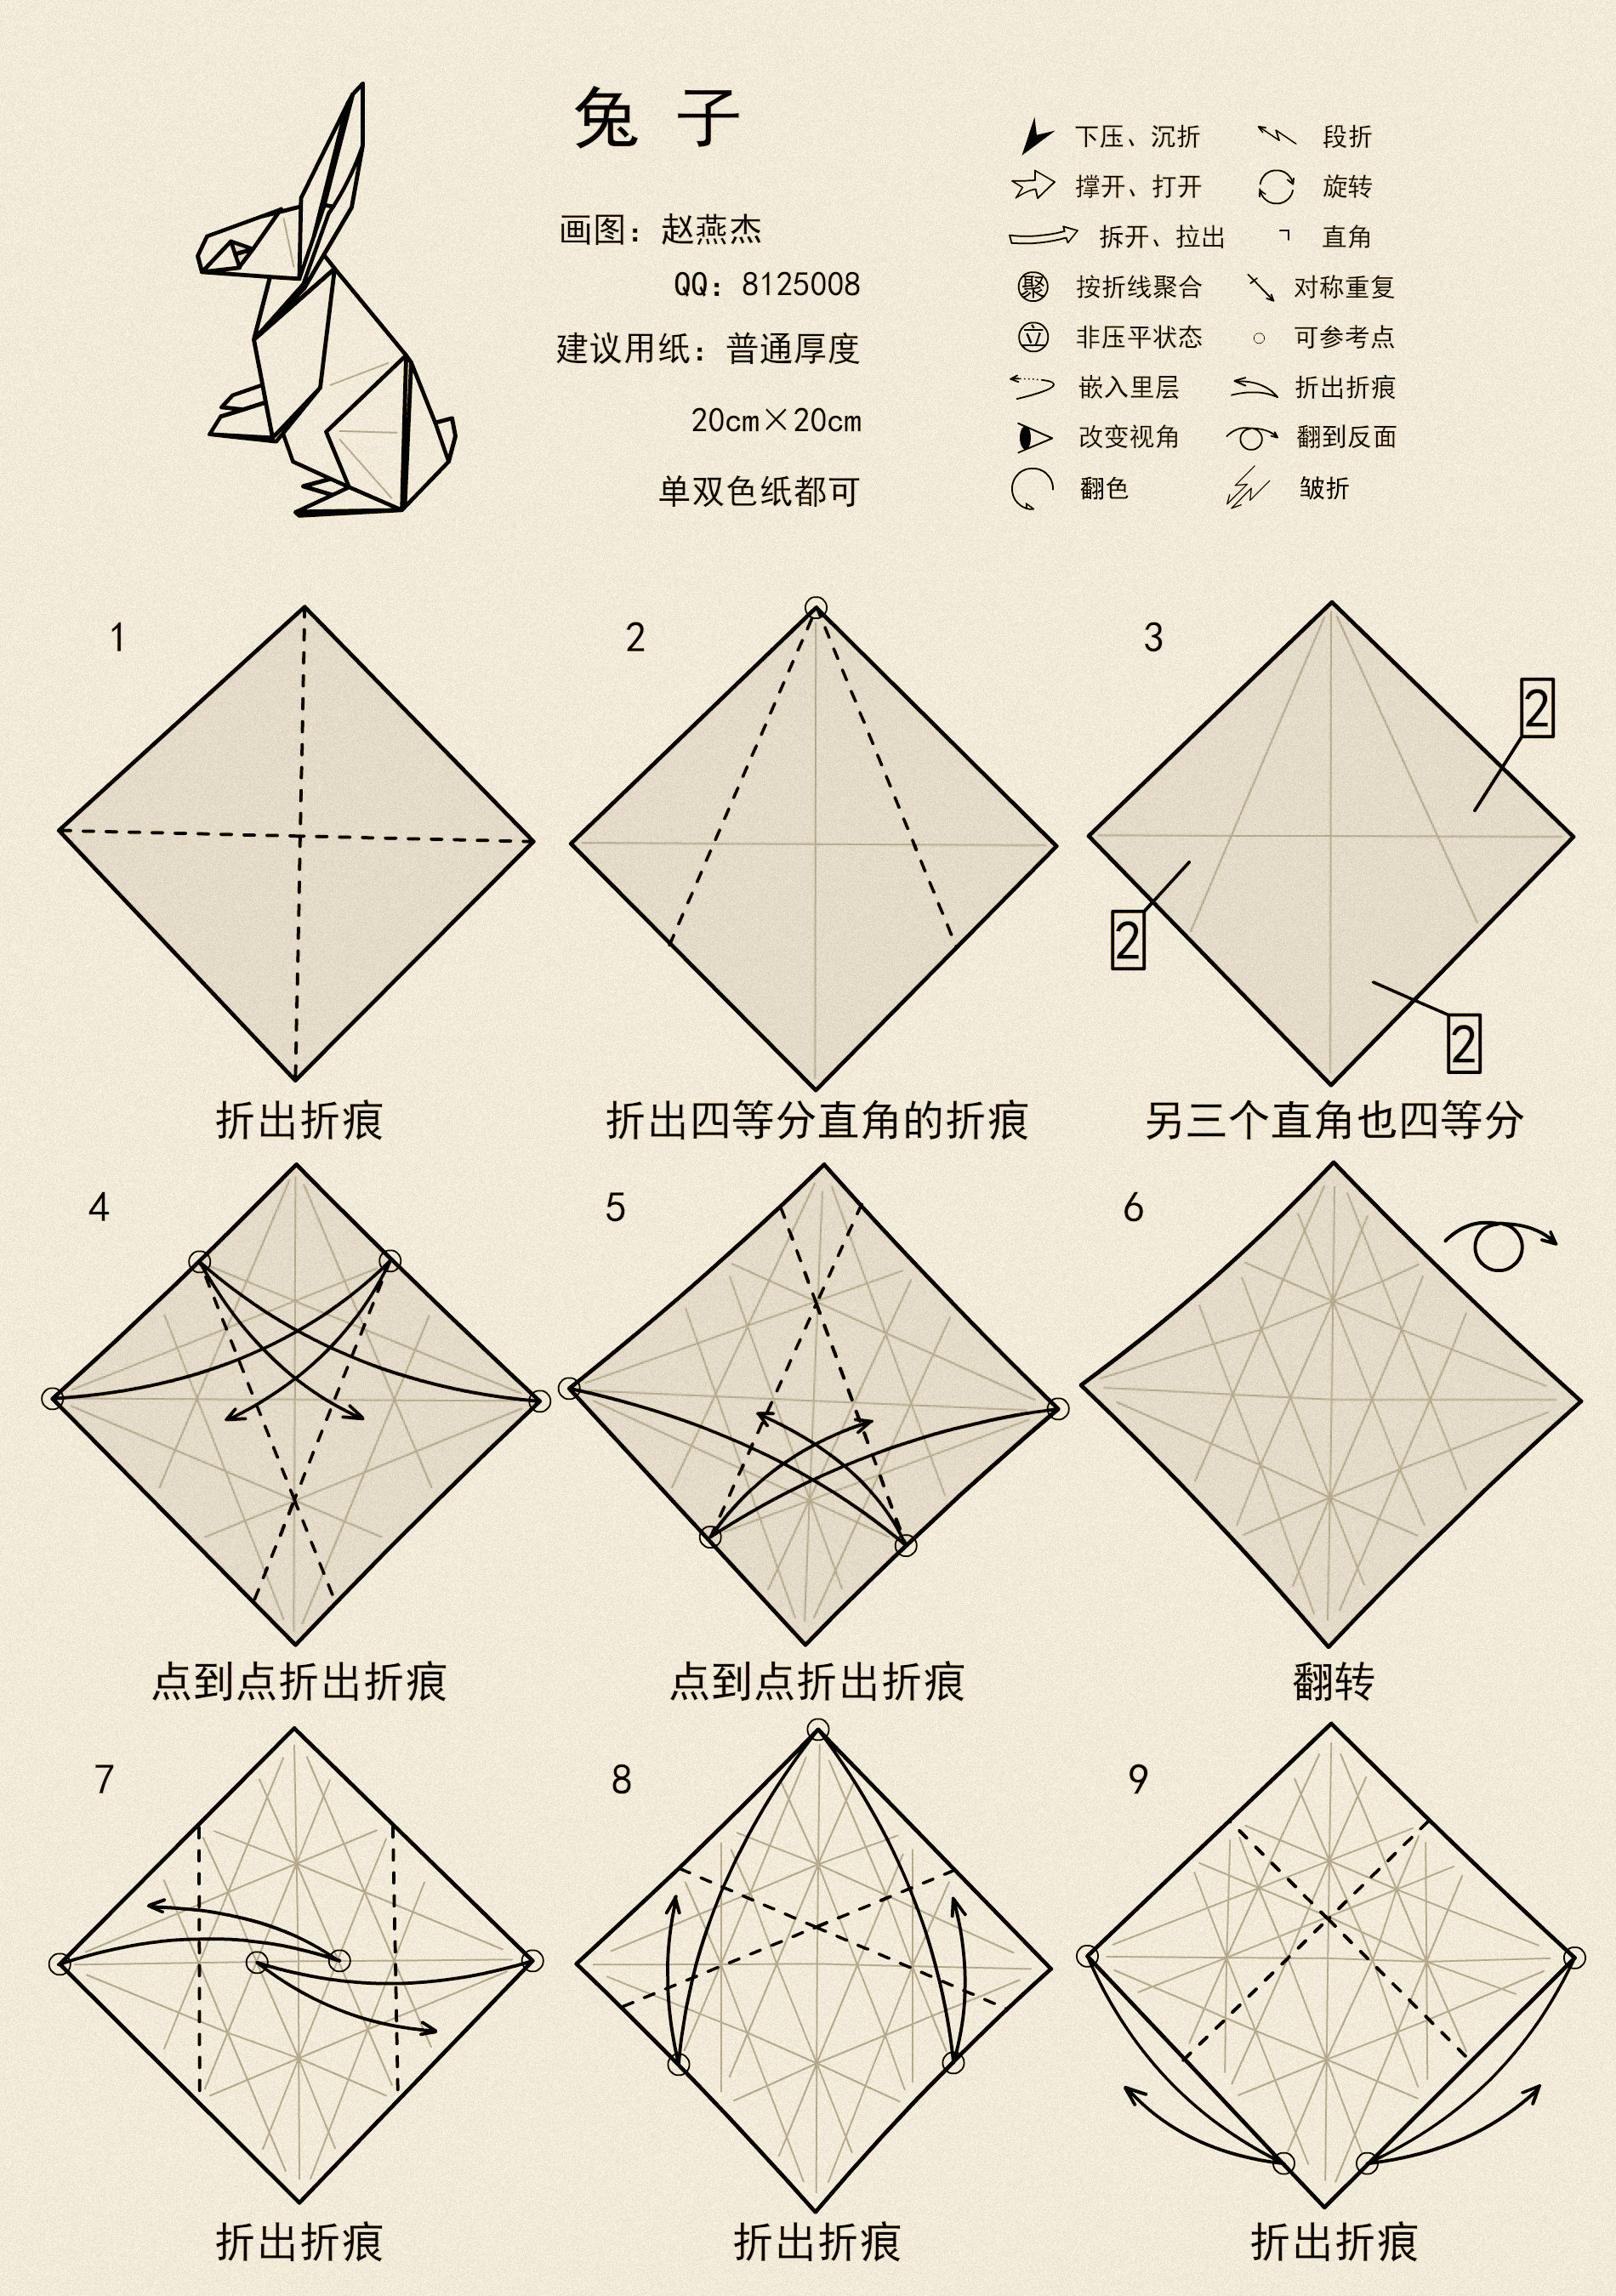 一款很棒的兔子折纸高清图解教程